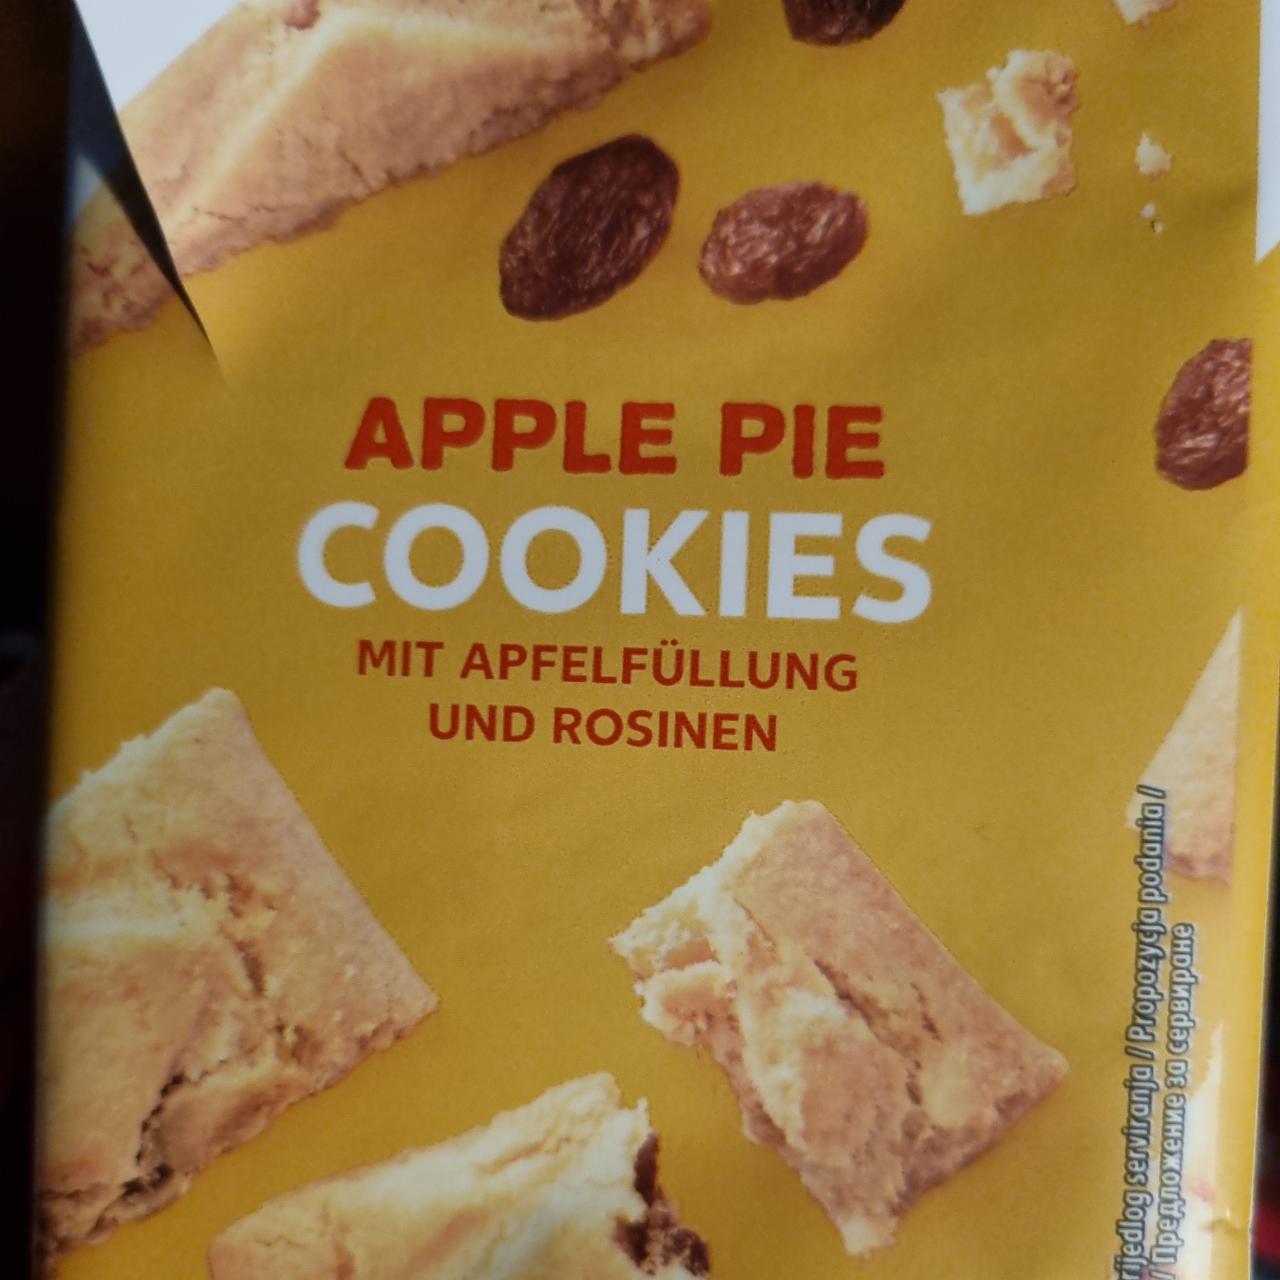 Фото - печенье со вкусом яблочного пирога K-classic